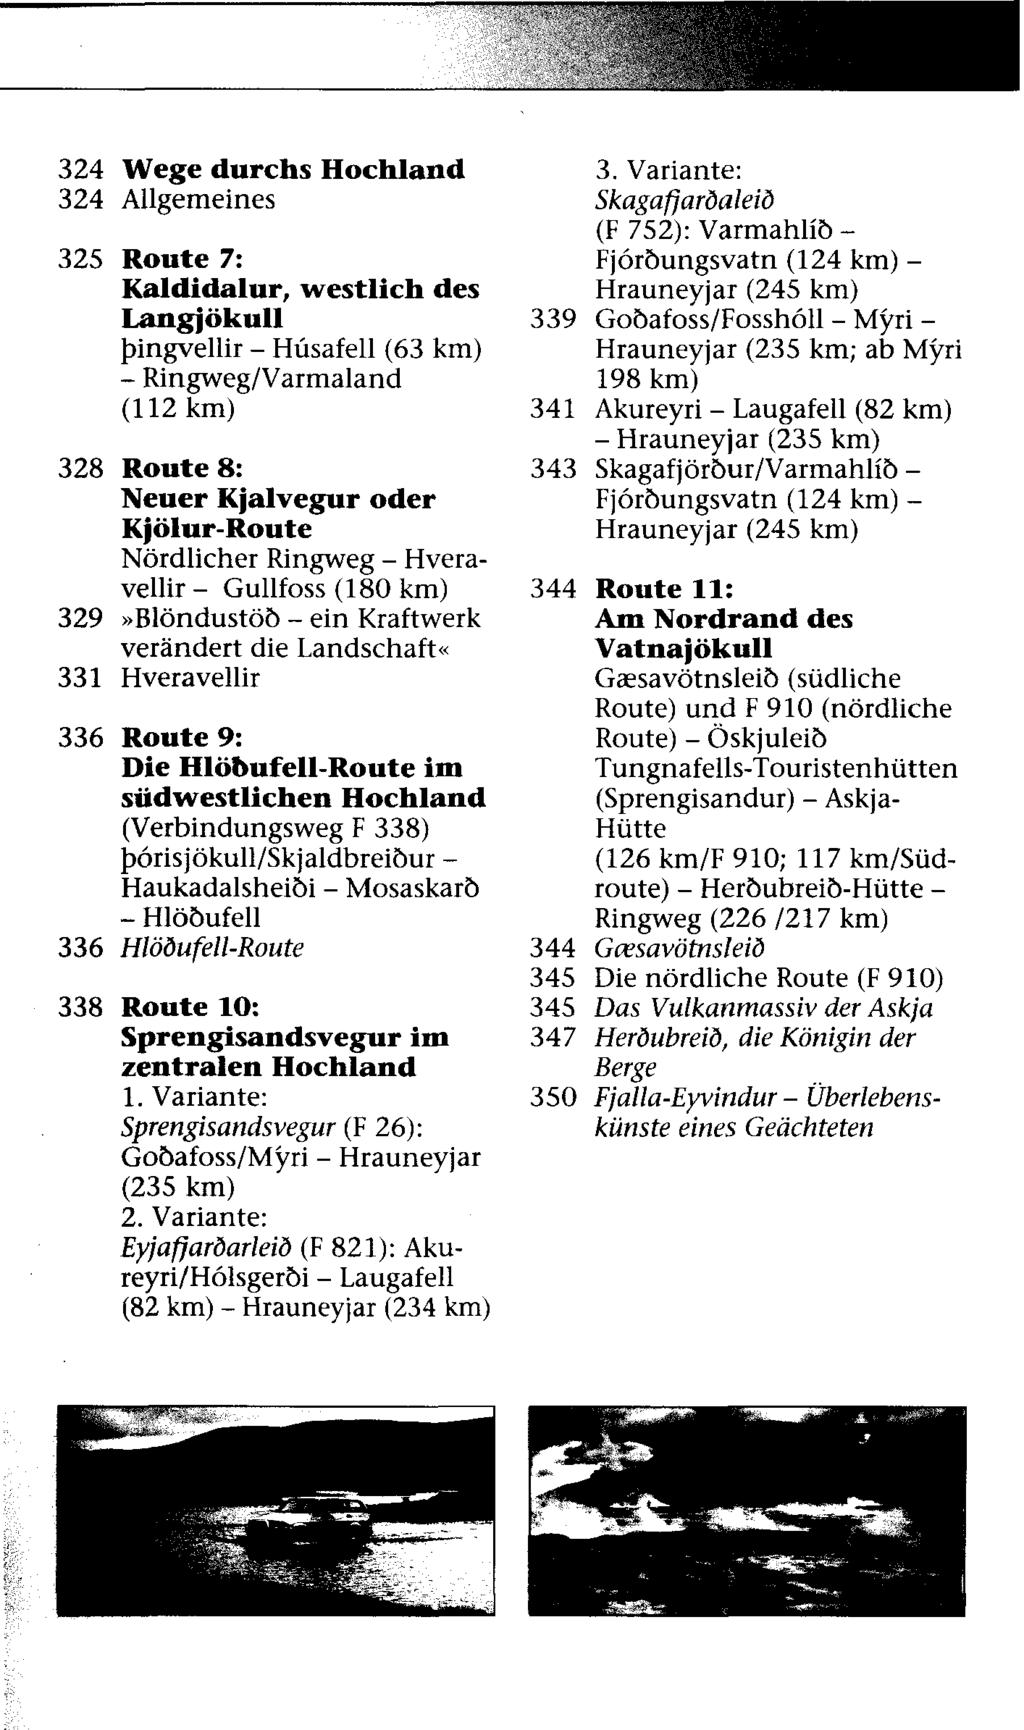 324 Wege durchs Hochland 324 Allgemeines 325 Route 7: Kaldidalur, westlich des Langjökull bingvellir - Hüsafell (63 km) - Ringweg/Varmaland (112 km) 328 Route 8: Neuer Kjalvegur oder Kjölur Route